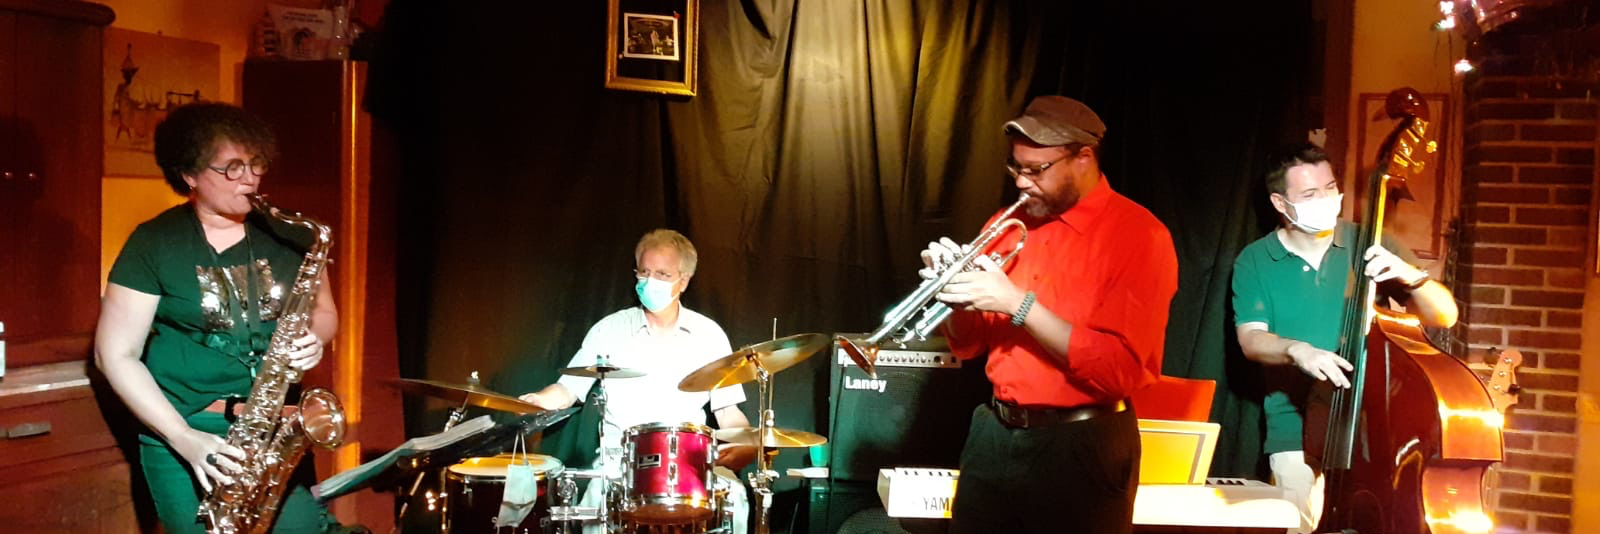 Kameleon jazz band, groupe de musique Jazz en représentation à Seine Saint Denis - photo de couverture n° 1